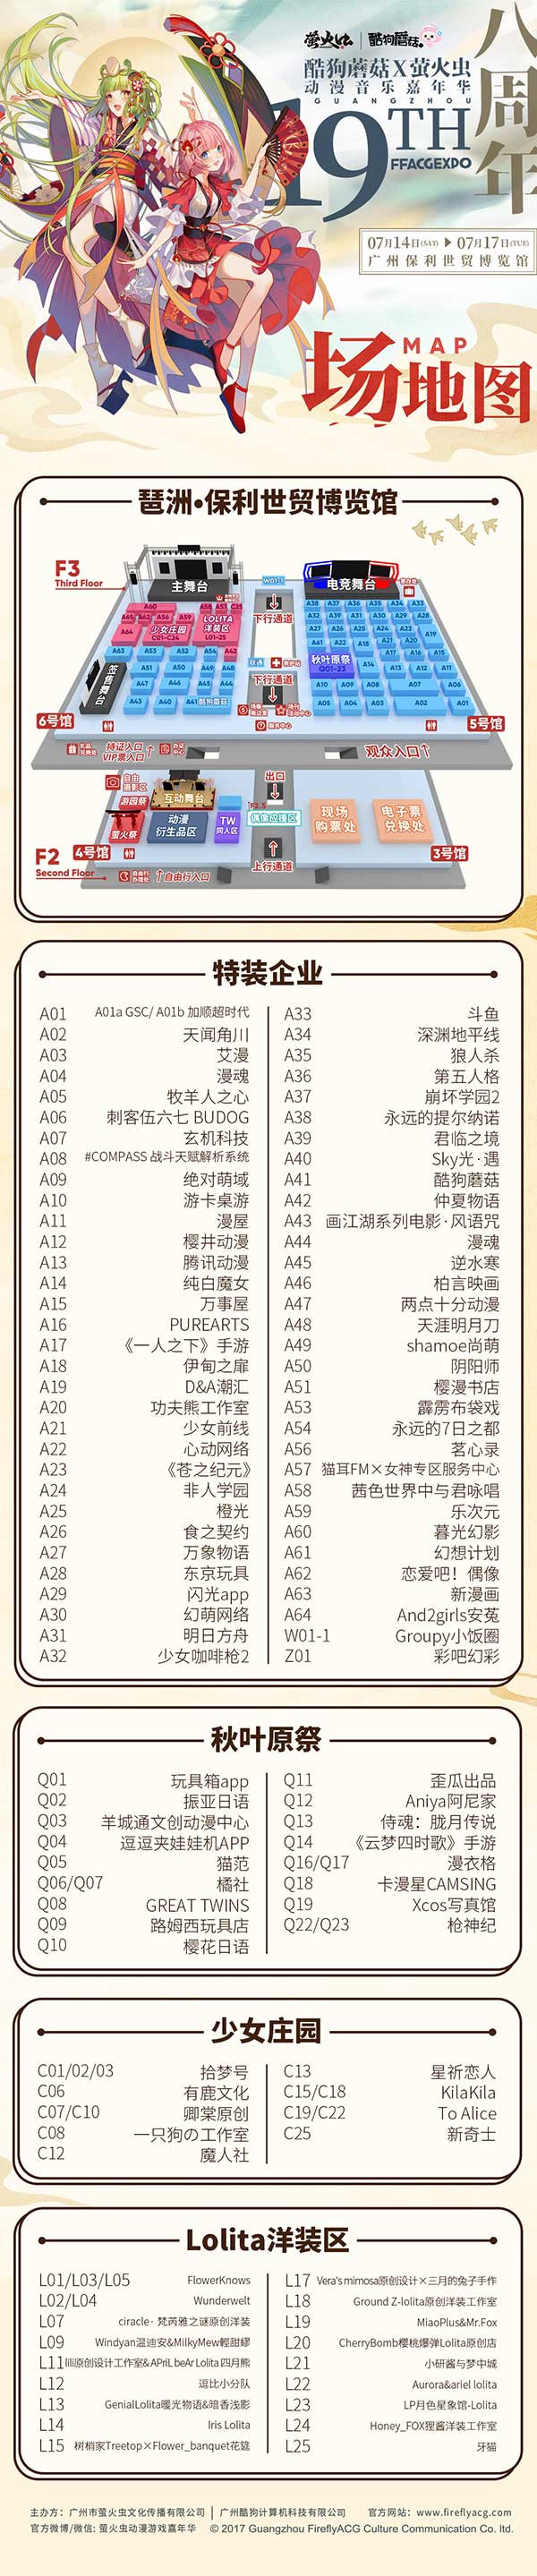 划重点!你必须要看的7月广州萤火虫逛展攻略插图icecomic动漫-云之彼端,约定的地方(´･ᴗ･`)5